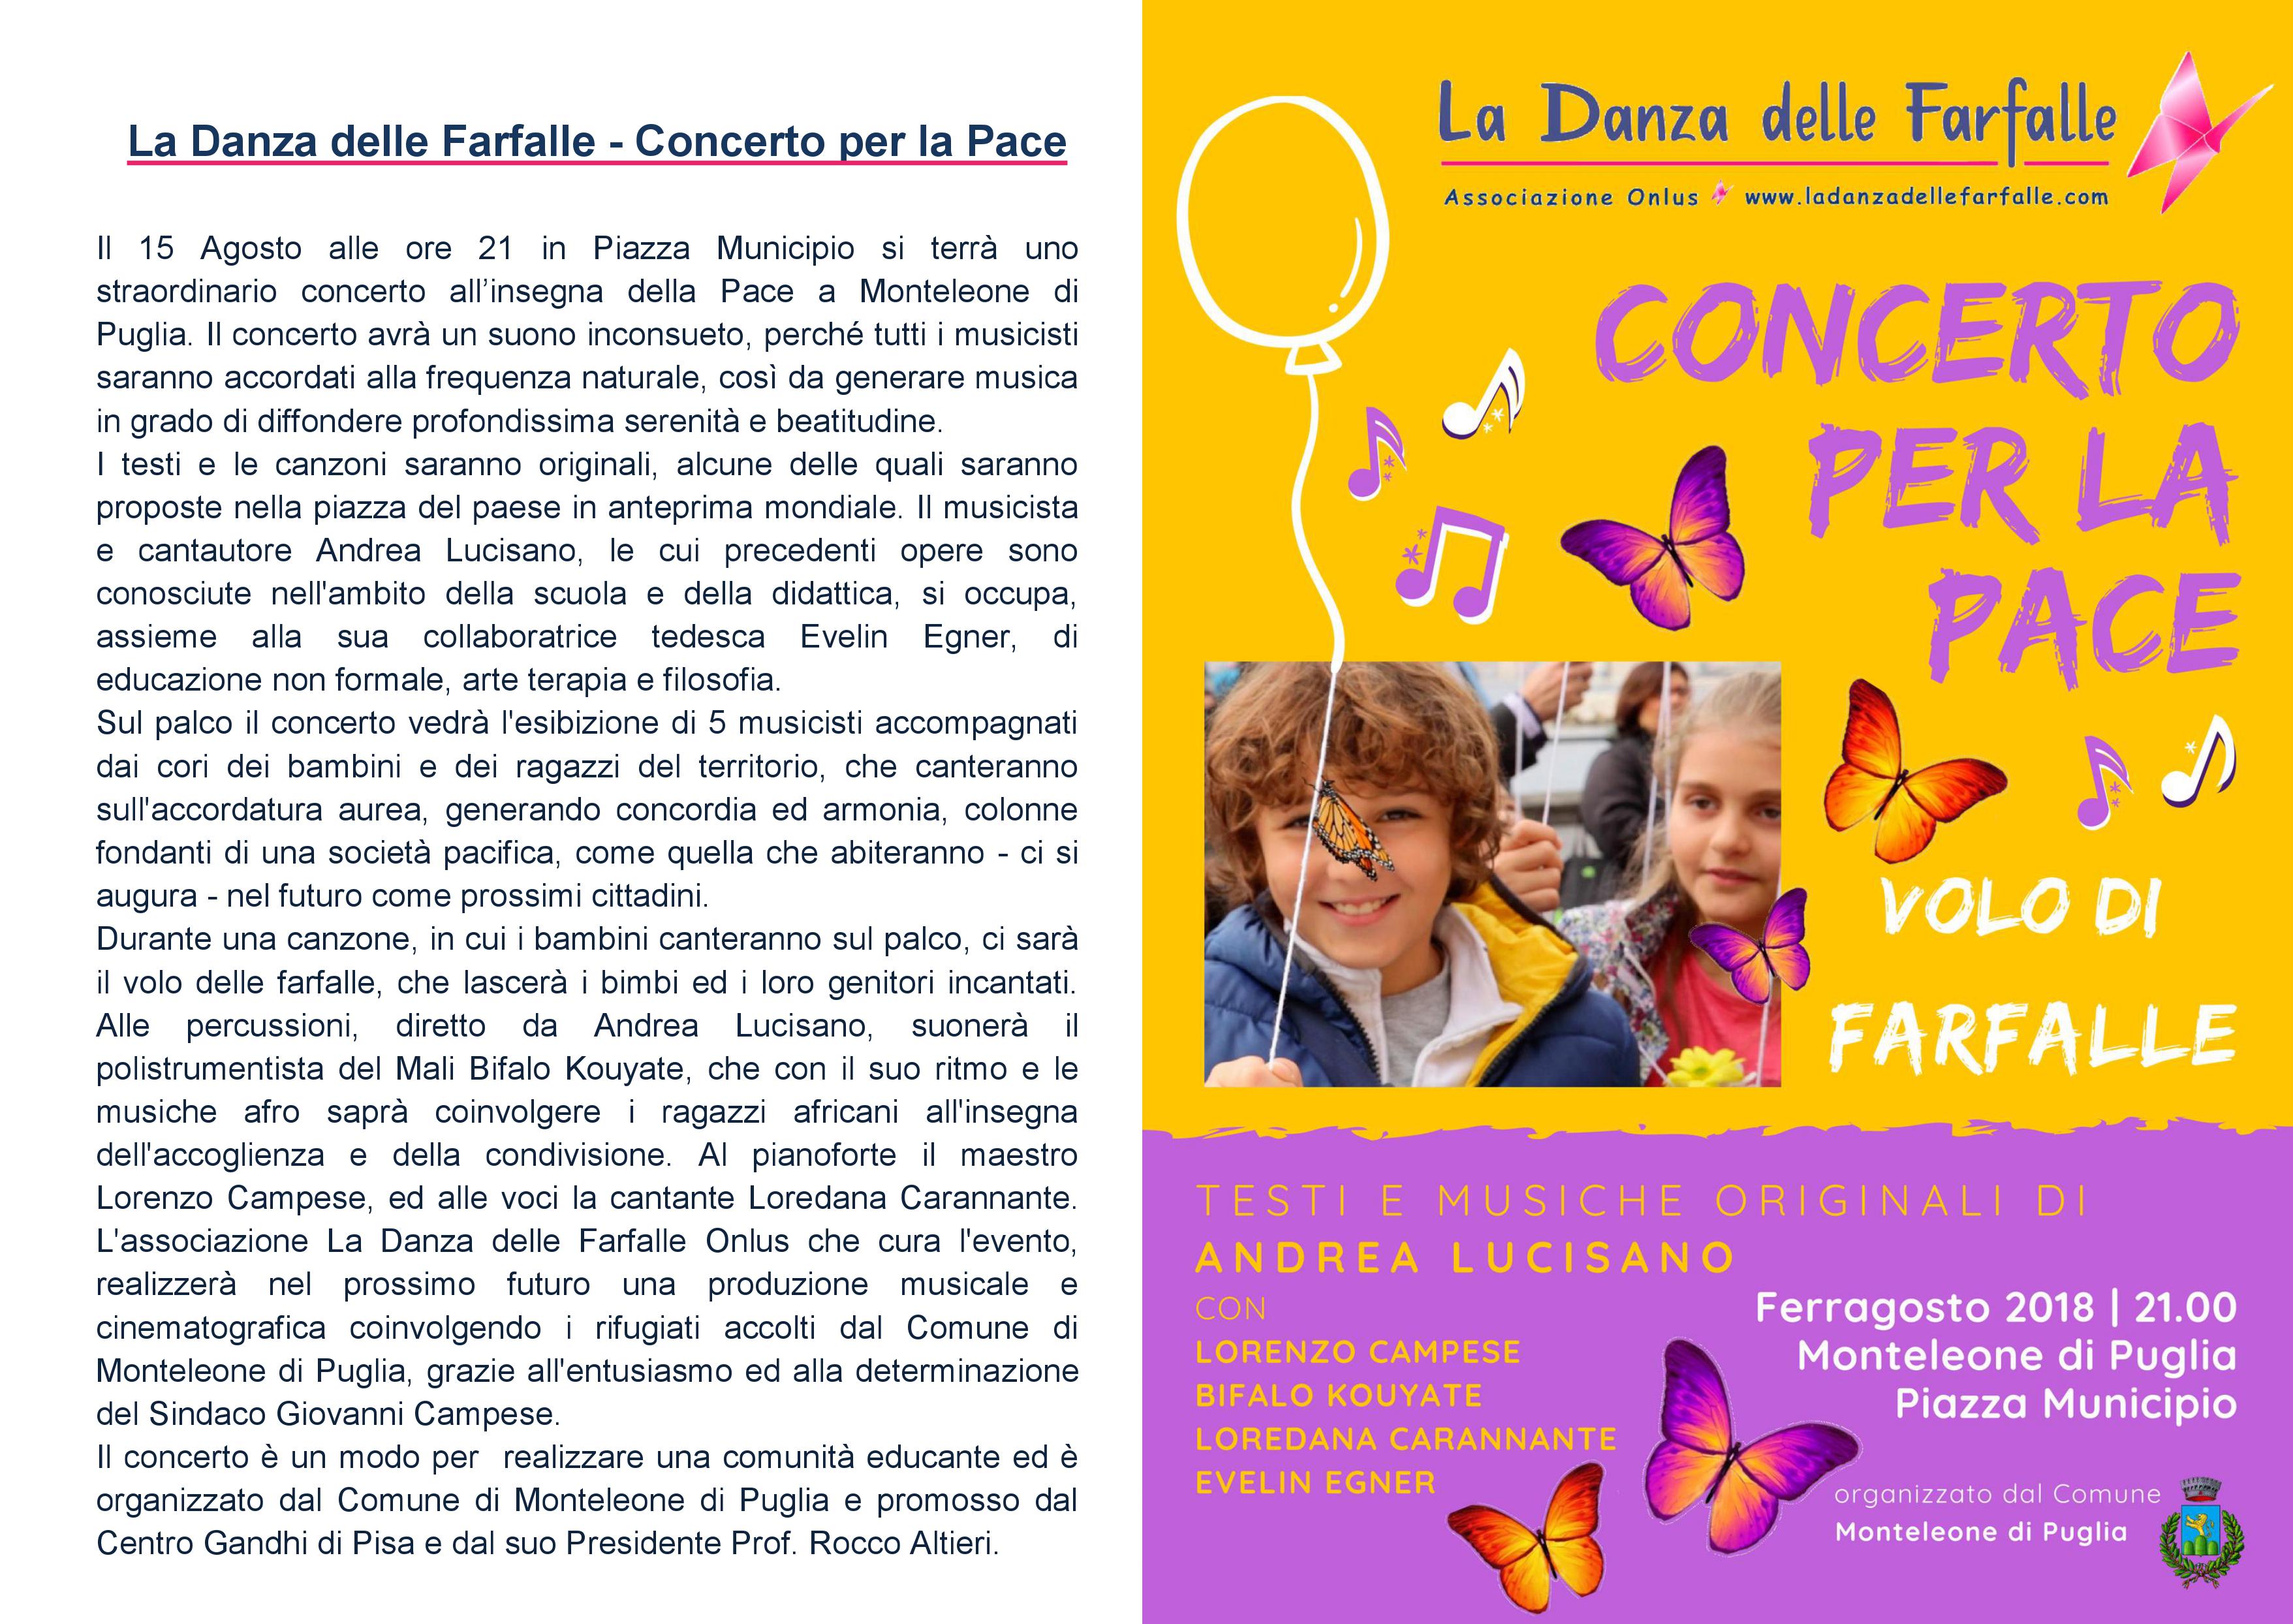 Comunicato stampa La Danza delle Farfalle Onlus Concerto Ferragosto Monteleone di Puglia